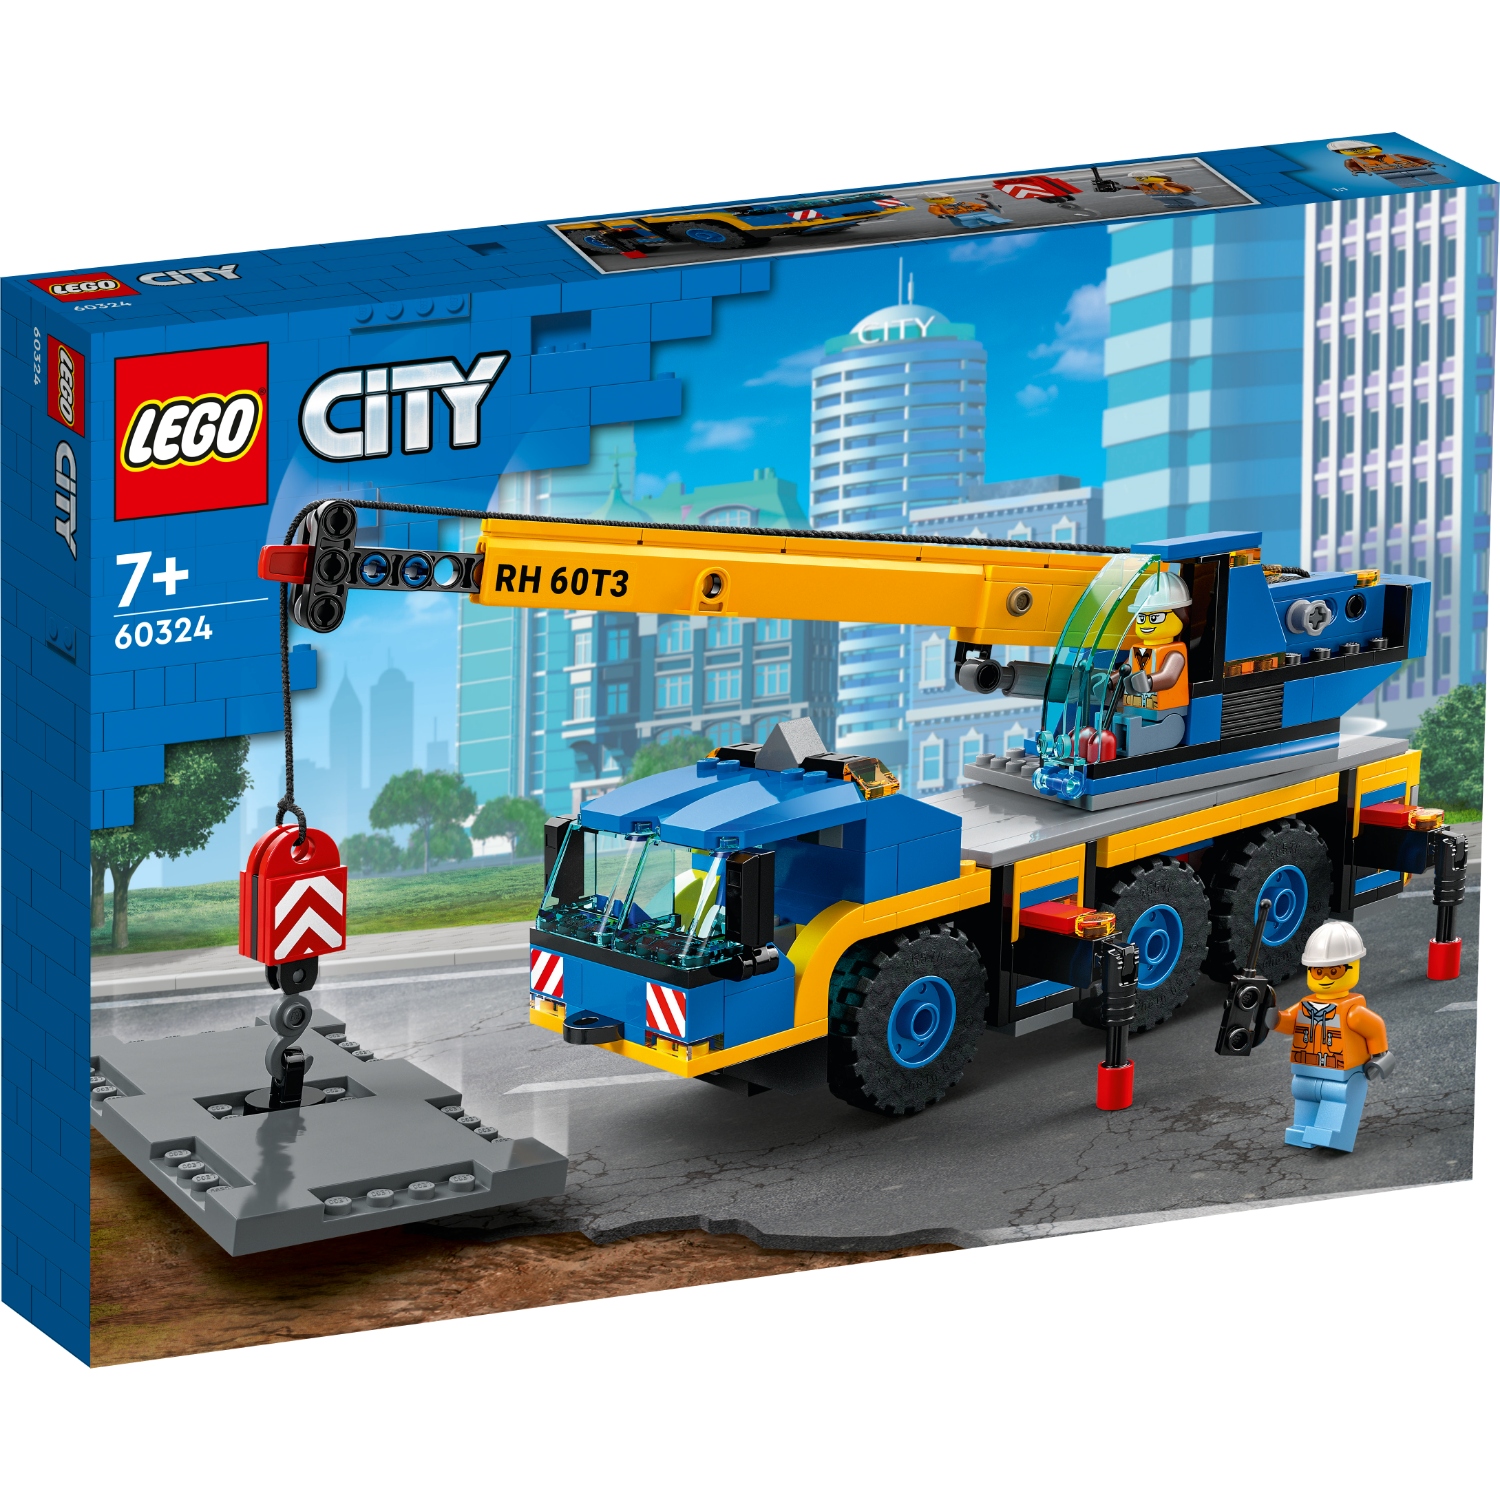 LEGO CITY 60324 MOBIELE KRAAN - 411 0324 - 527095